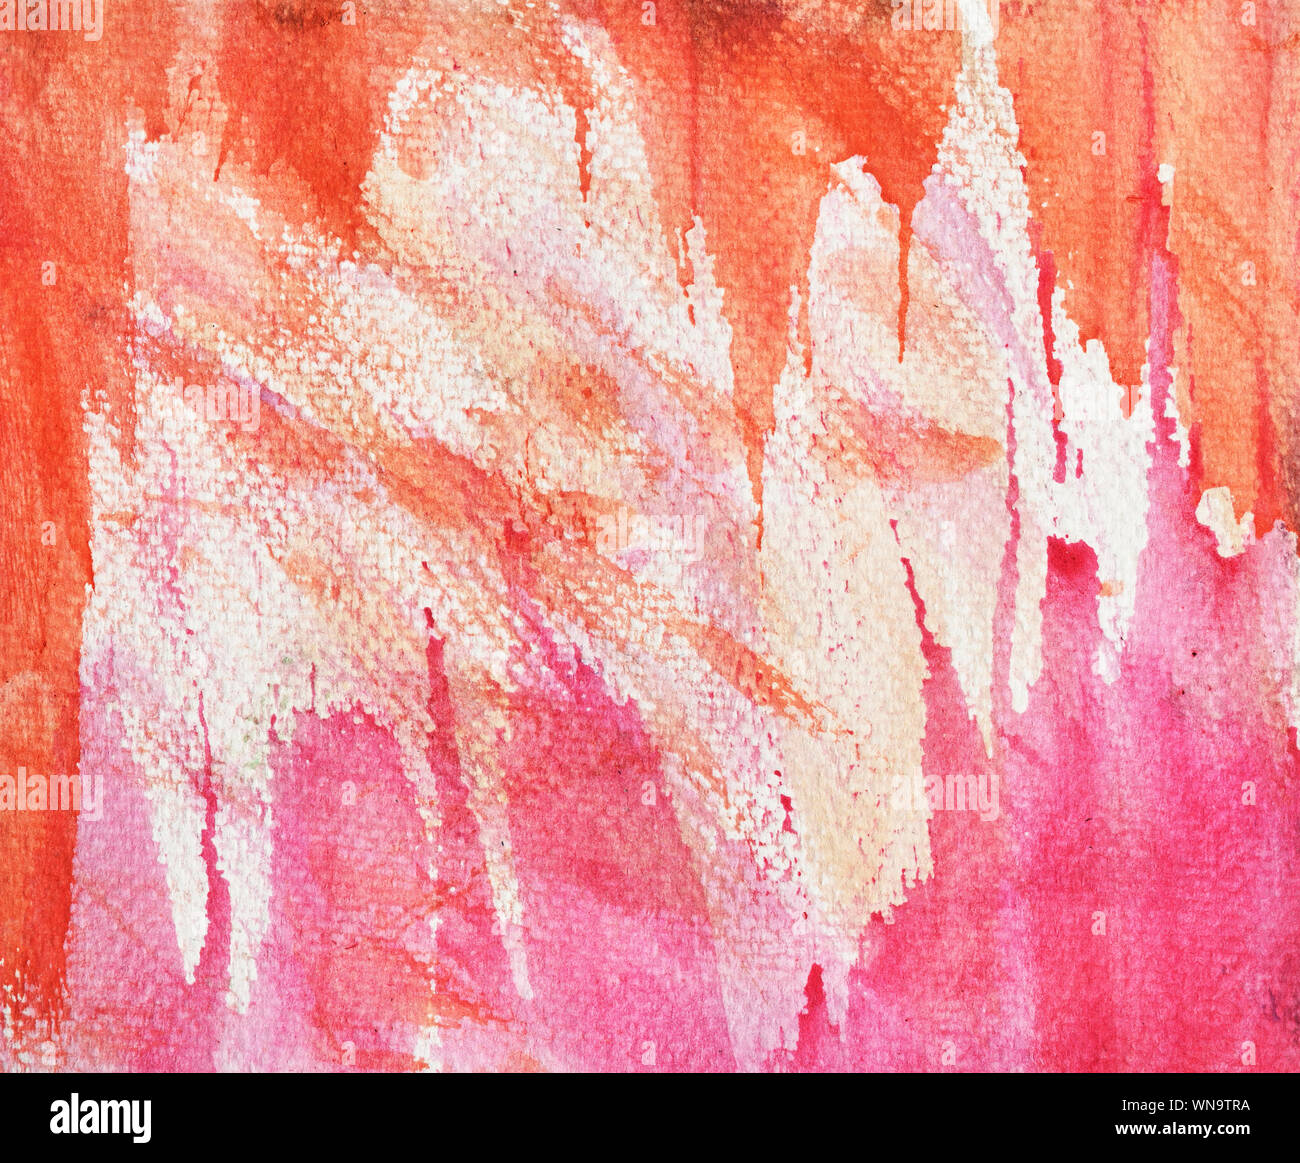 Marrón con manchas de color naranja y rosa flujo sobre fondo blanco , Ilustración abstractas y fondo brillante de acuarela dibujar a mano en papel Foto de stock